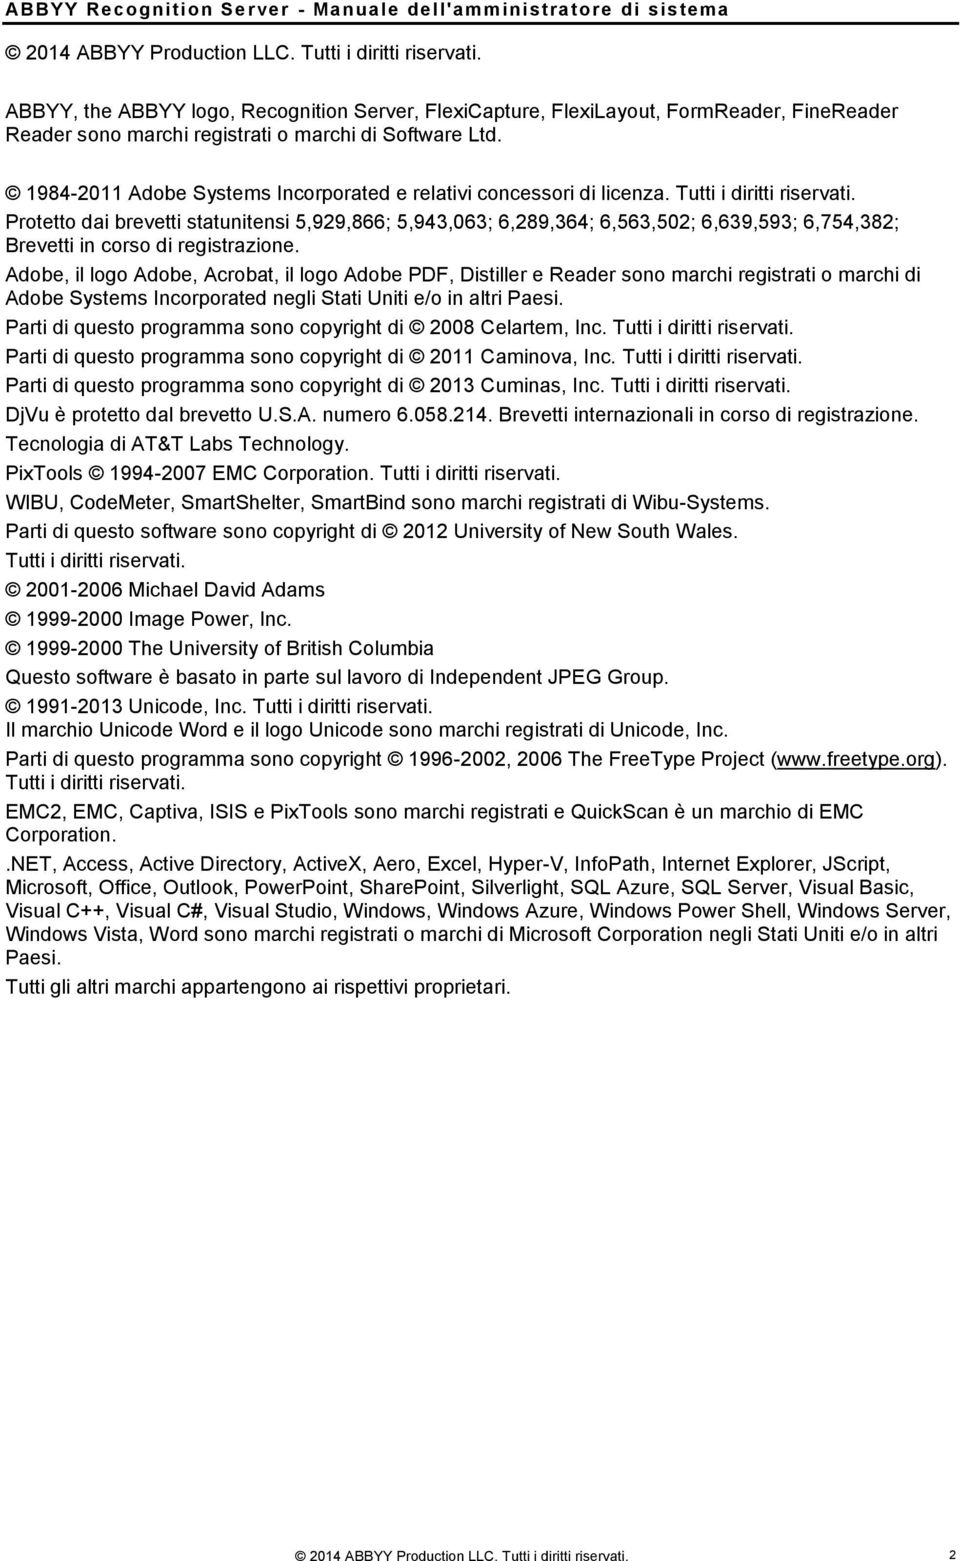 1984-2011 Adobe Systems Incorporated e relativi concessori di licenza. Tutti i diritti riservati.